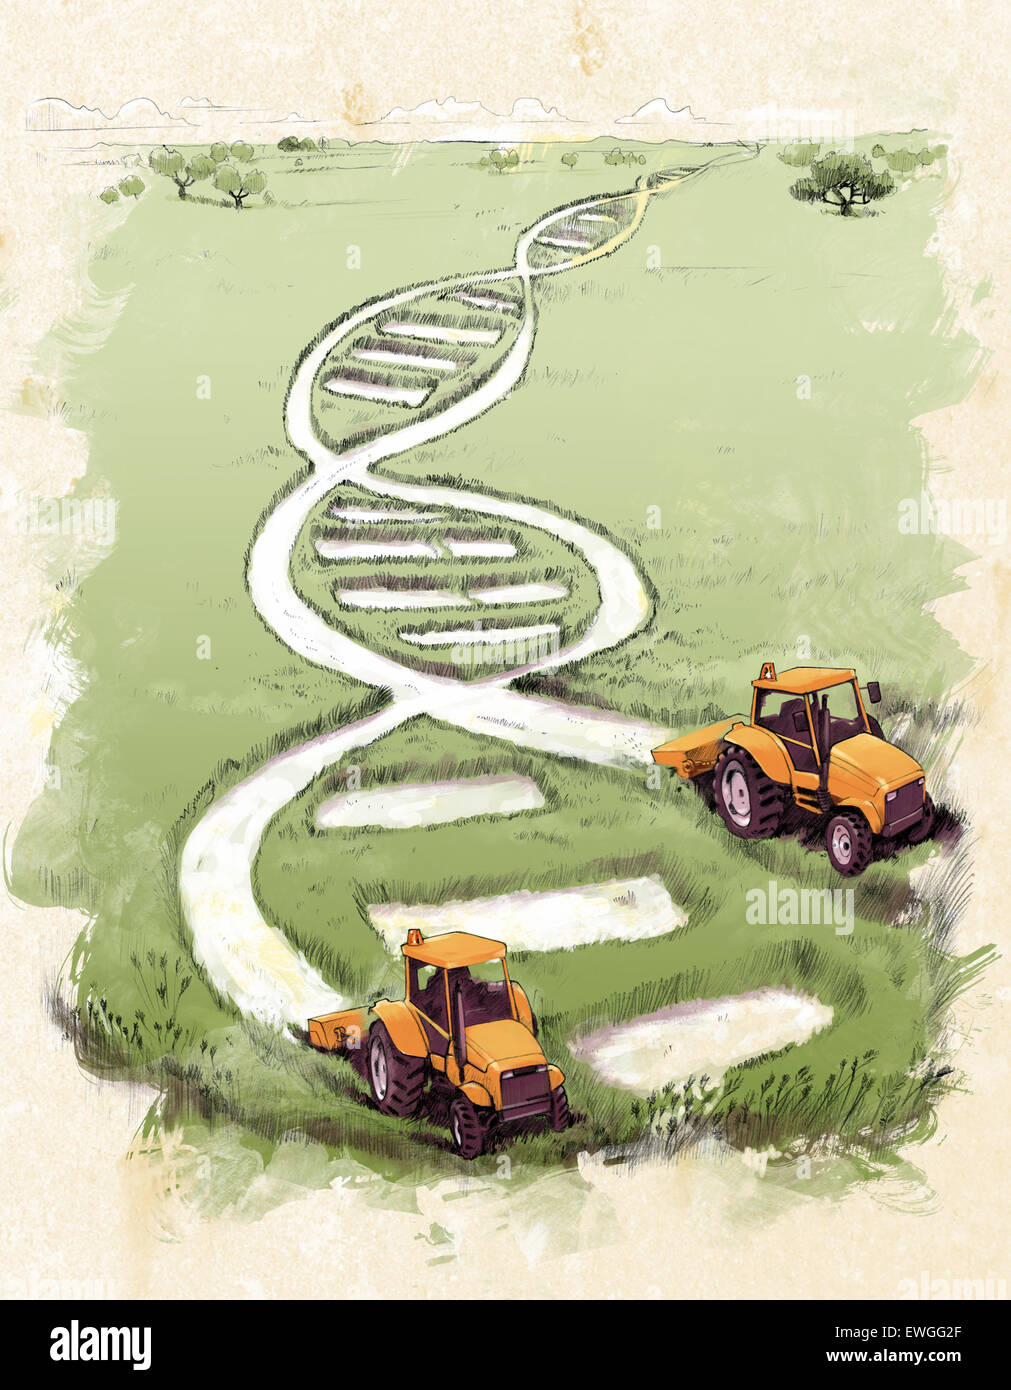 Image d'illustration du modèle de l'hélice avec des tracteurs agricoles sur le terrain Banque D'Images